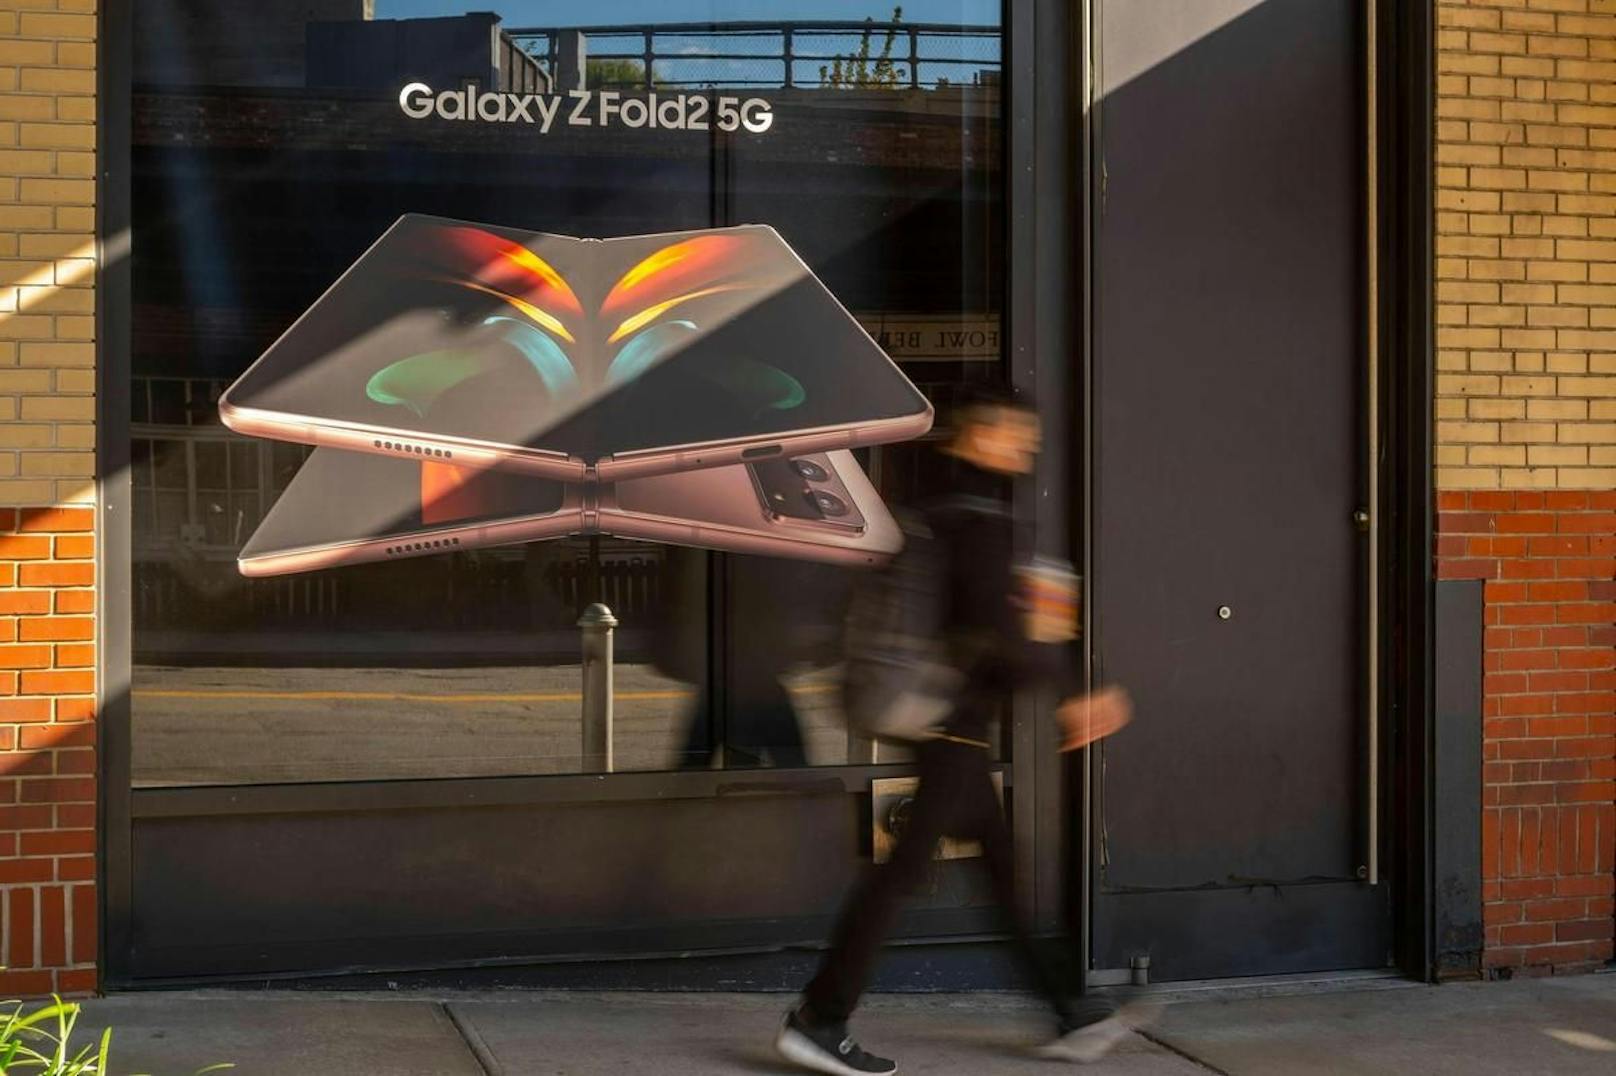 Außerdem soll Apple laut Gerüchten an einem faltbaren Smartphone arbeiten. Bis zu einer Präsentation könnten noch Jahre vergehen.